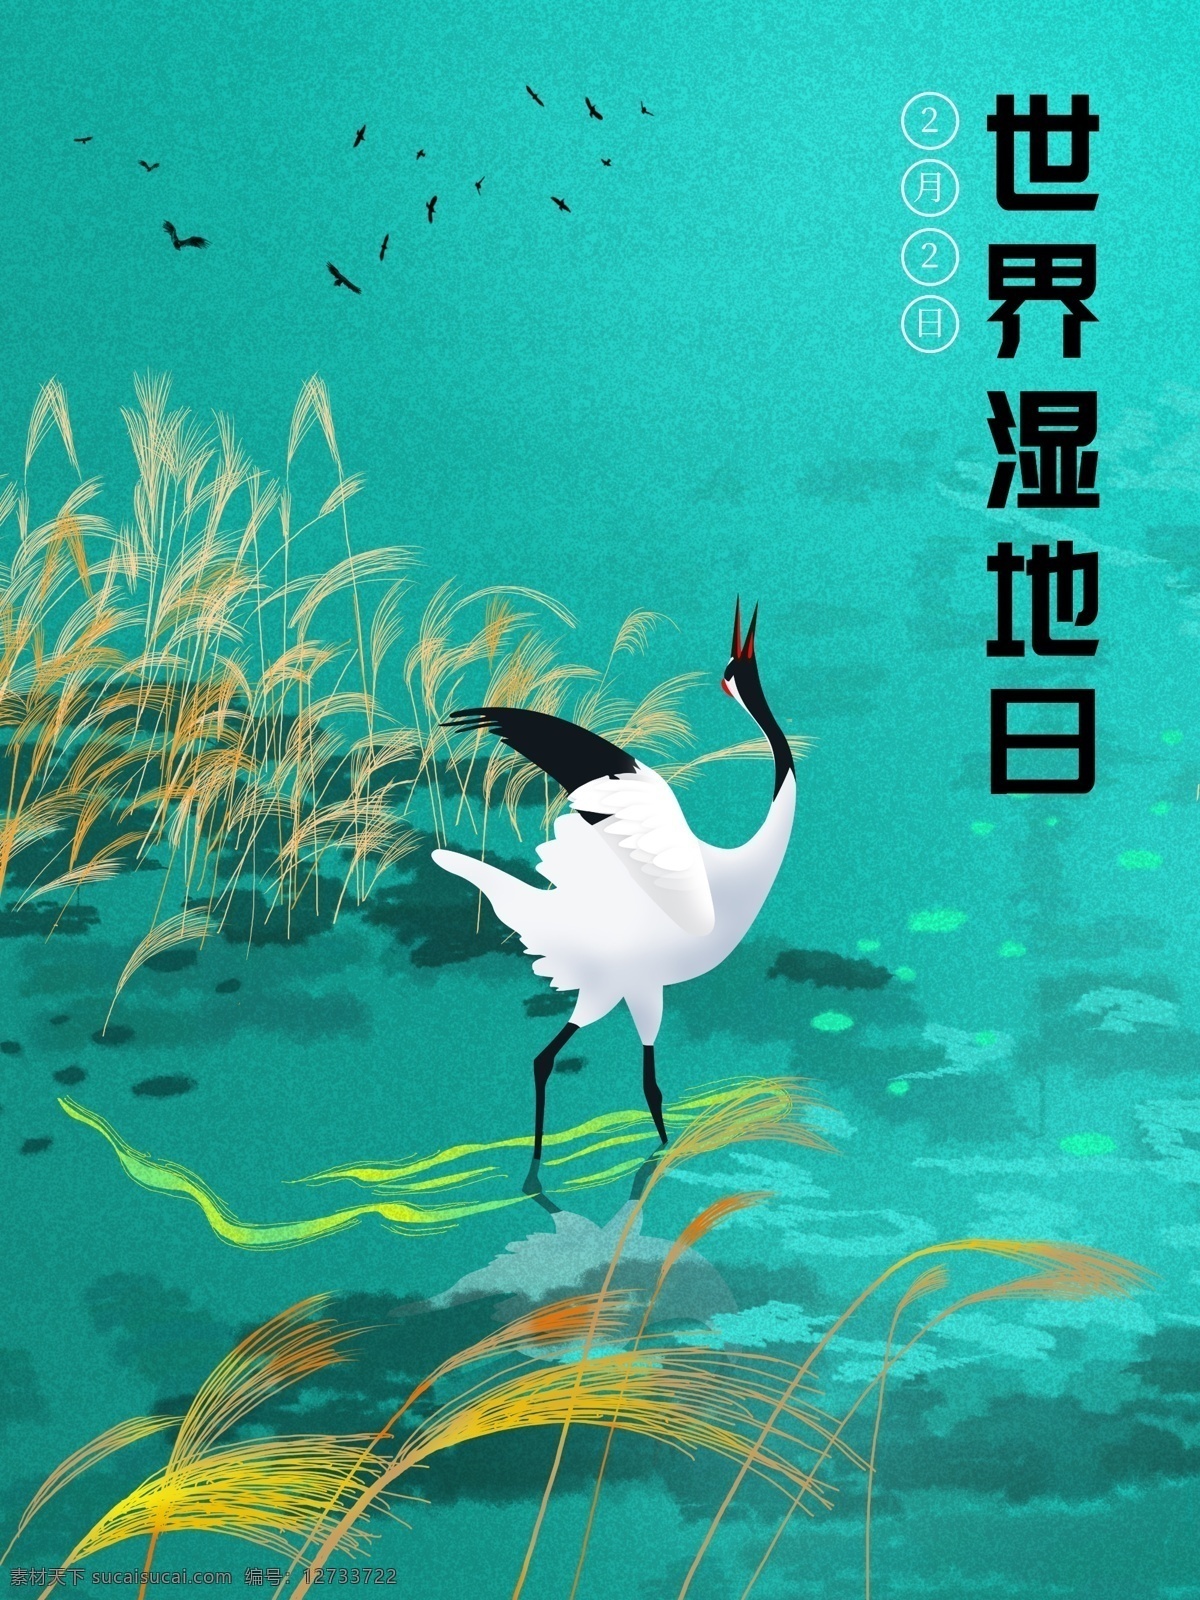 原创 手绘 插画 世界 湿地 日 鸟 芦苇 绿色 蓝色 飞鸟 世界湿地日 丹顶鹤 水